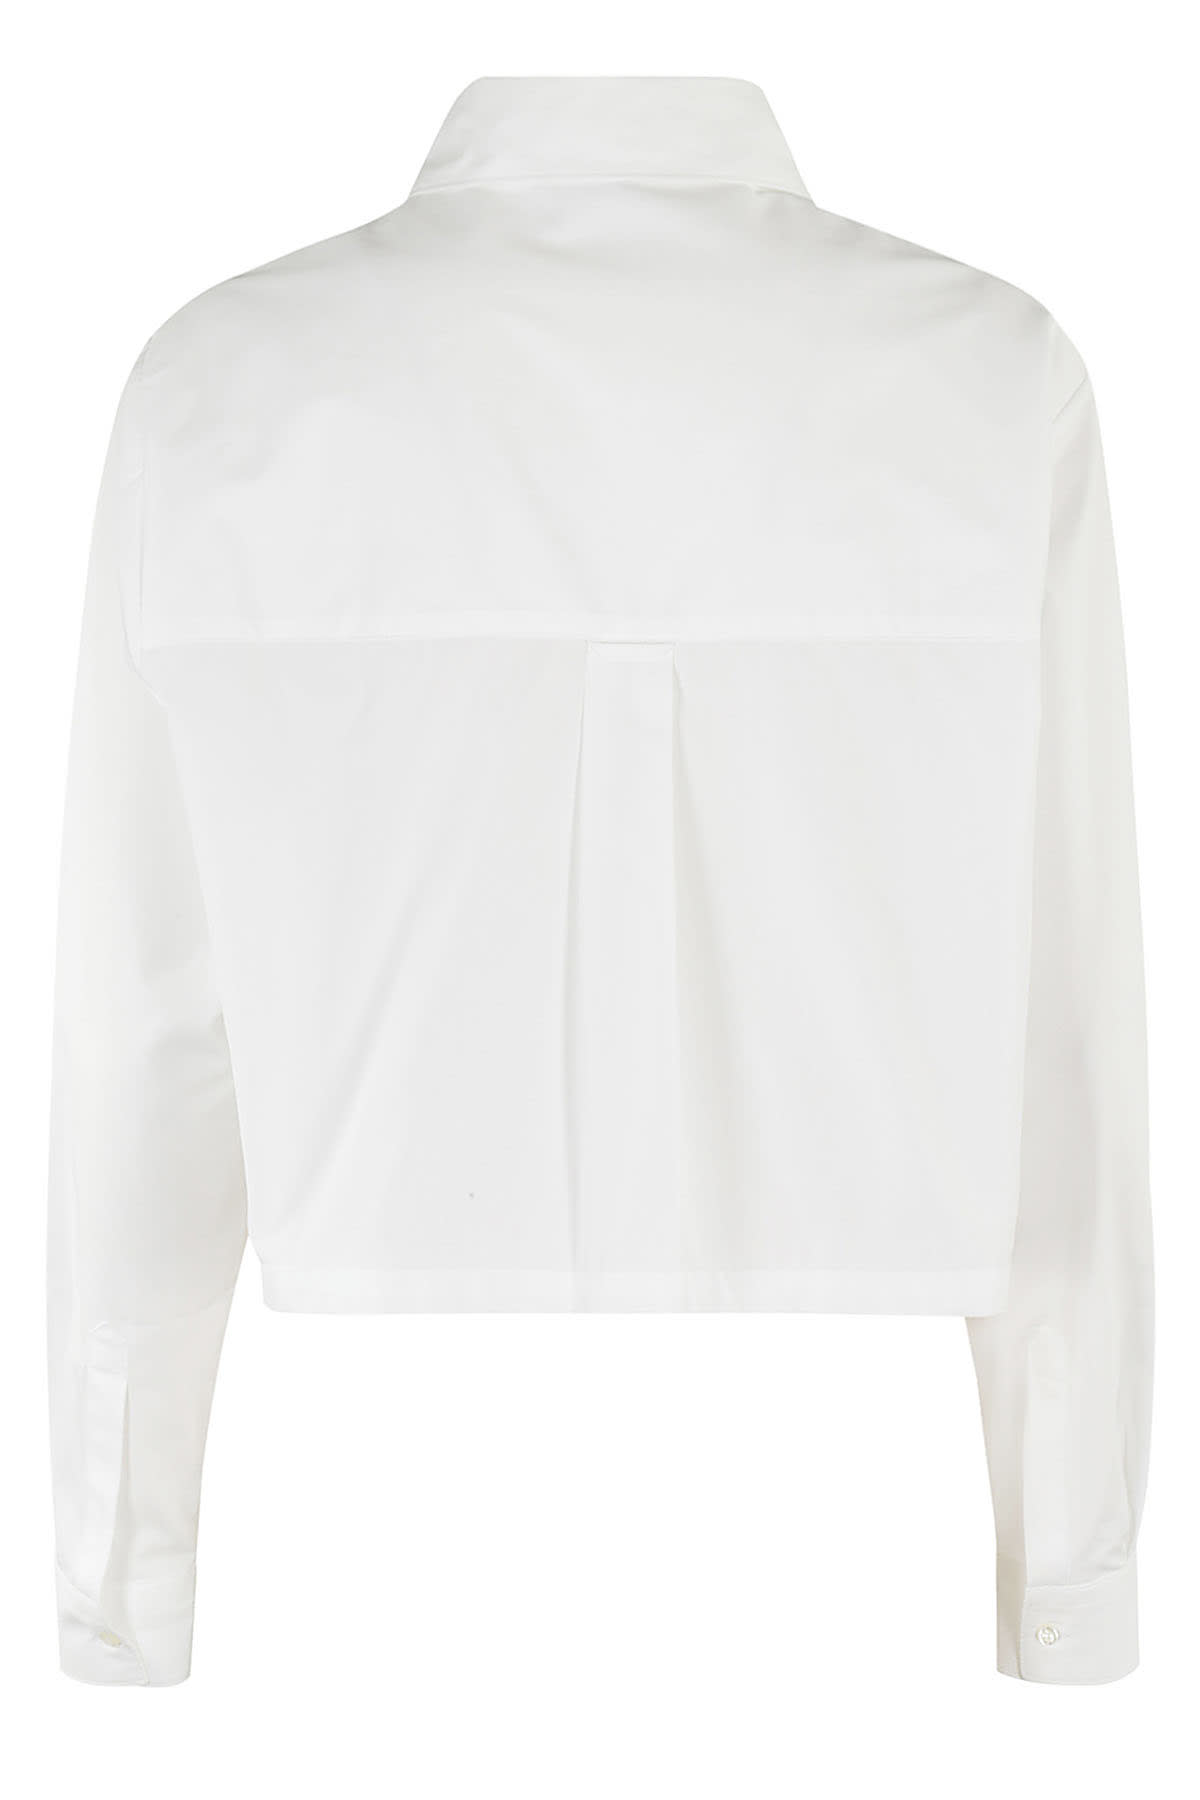 Shop Aspesi Camicia Mod 5465 In Bianco